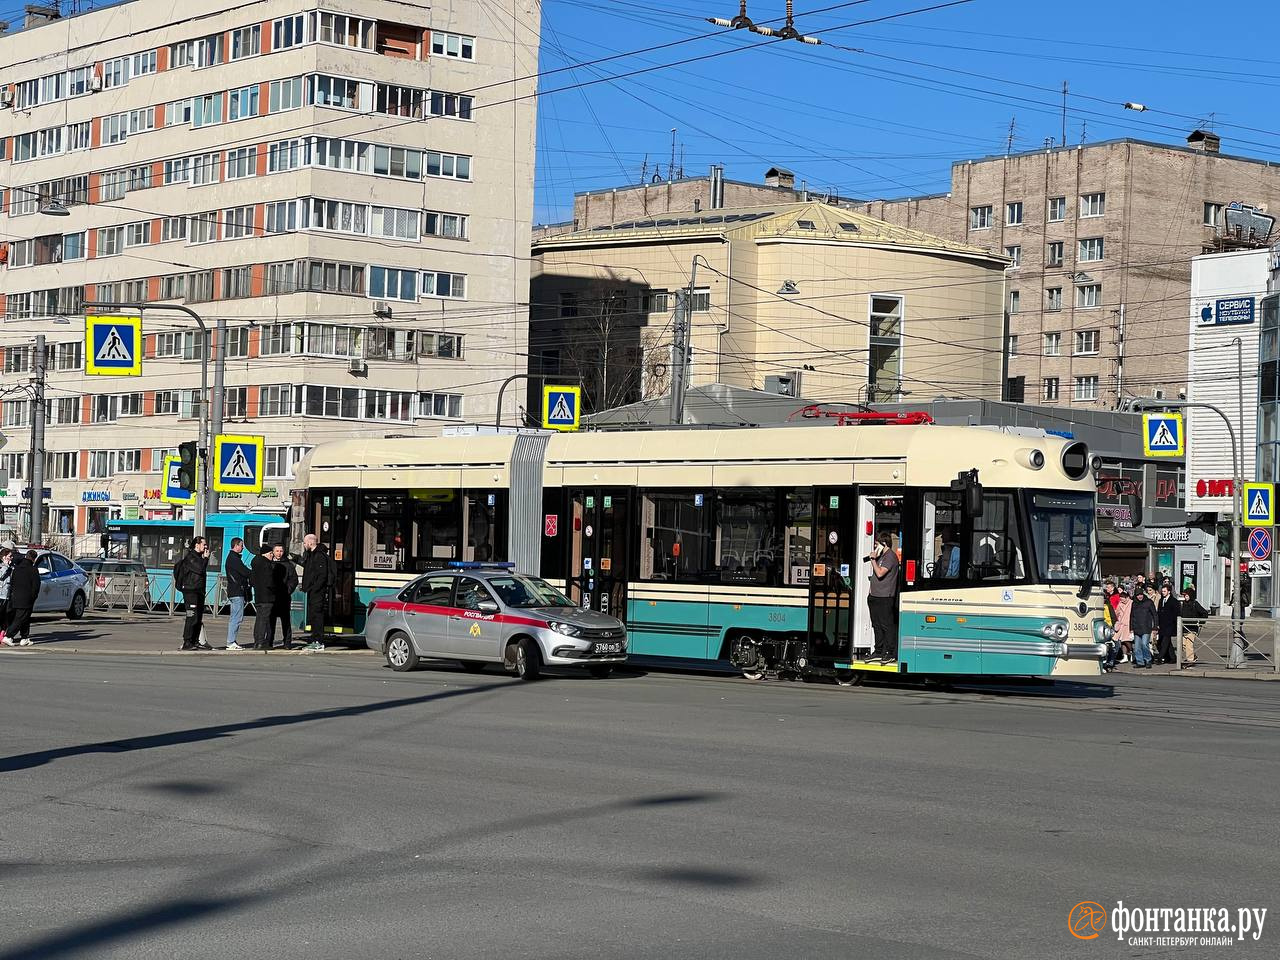 Водитель трамвая, который наехал на пешеходов на «Приморской», был трезв